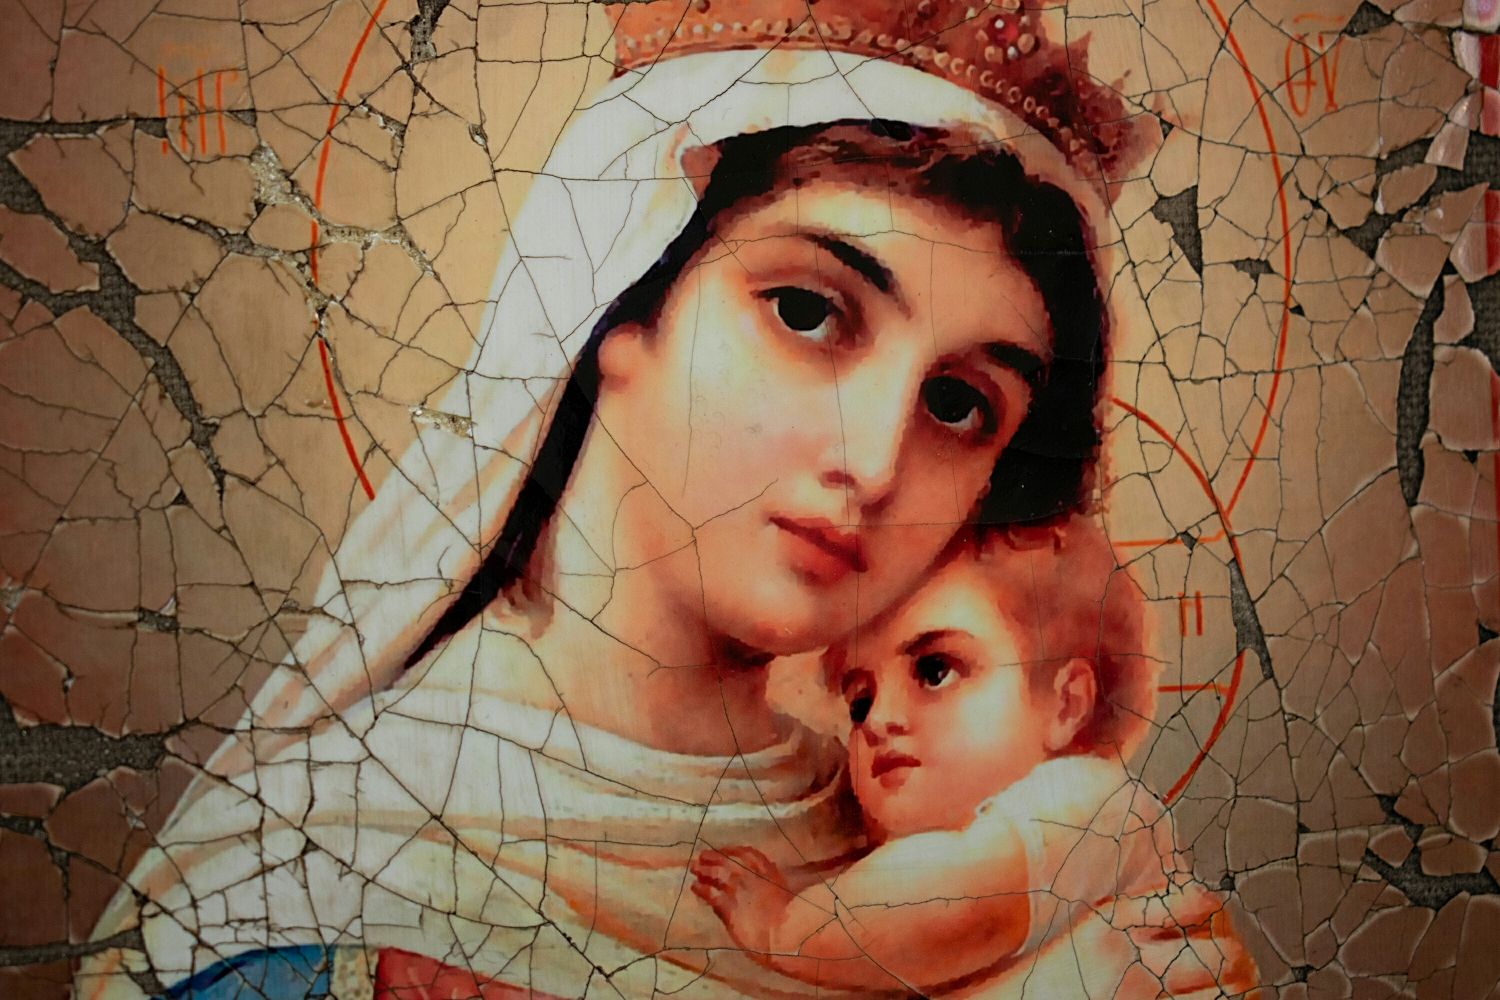 Позбавить відчаю та туги ця молитва перед іконою Божої Матері “Відчайдушних остання надія»